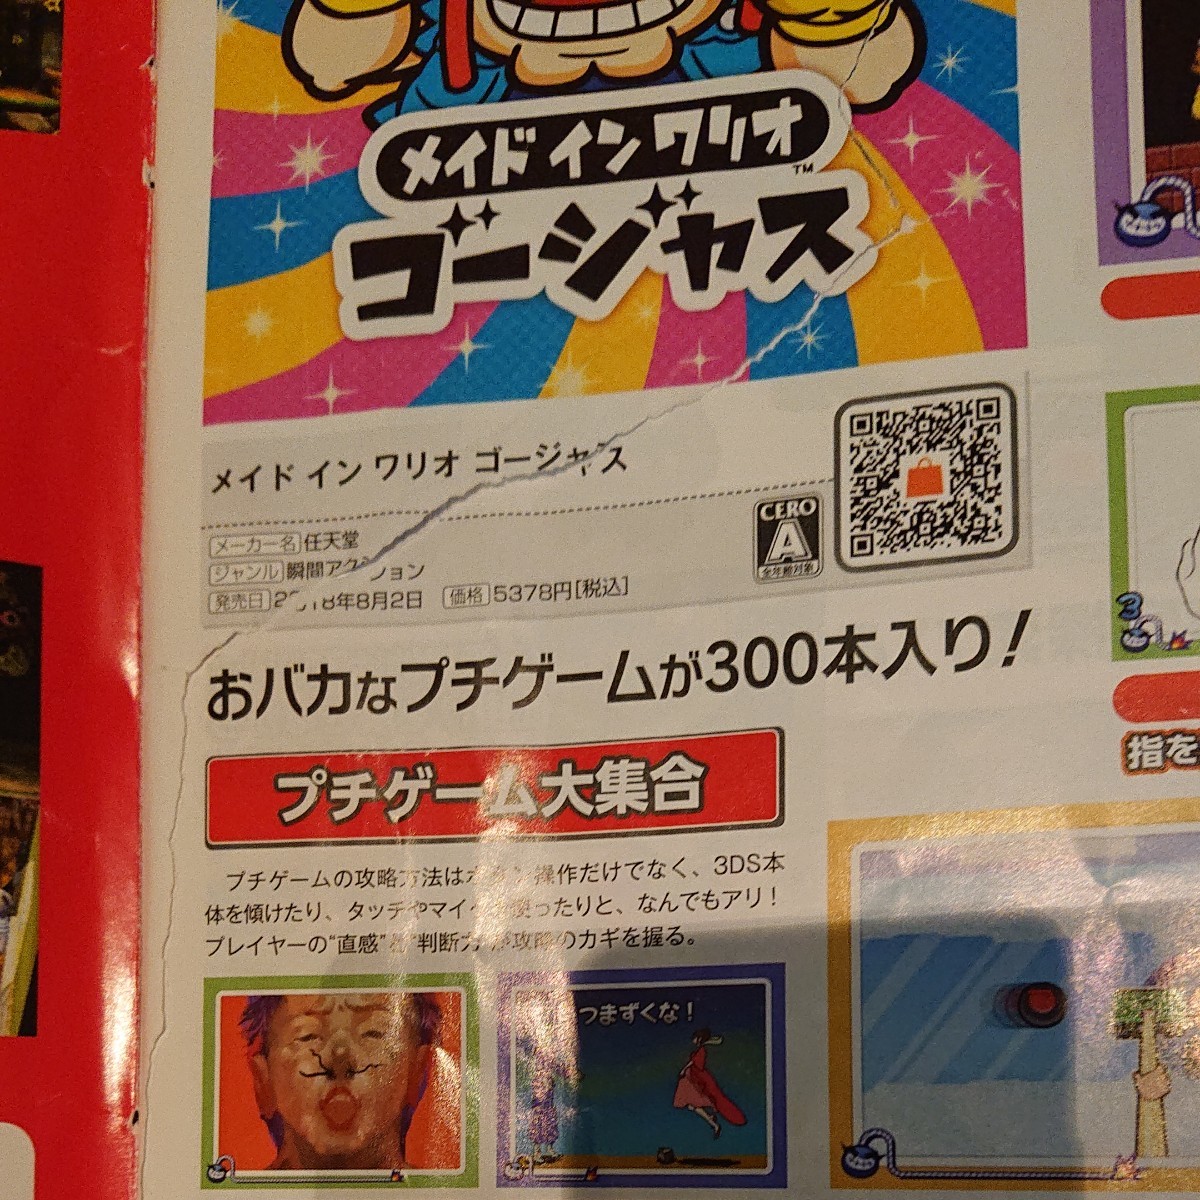 Paypayフリマ Nintendo 3ds ニンテンドー3ds カタログ